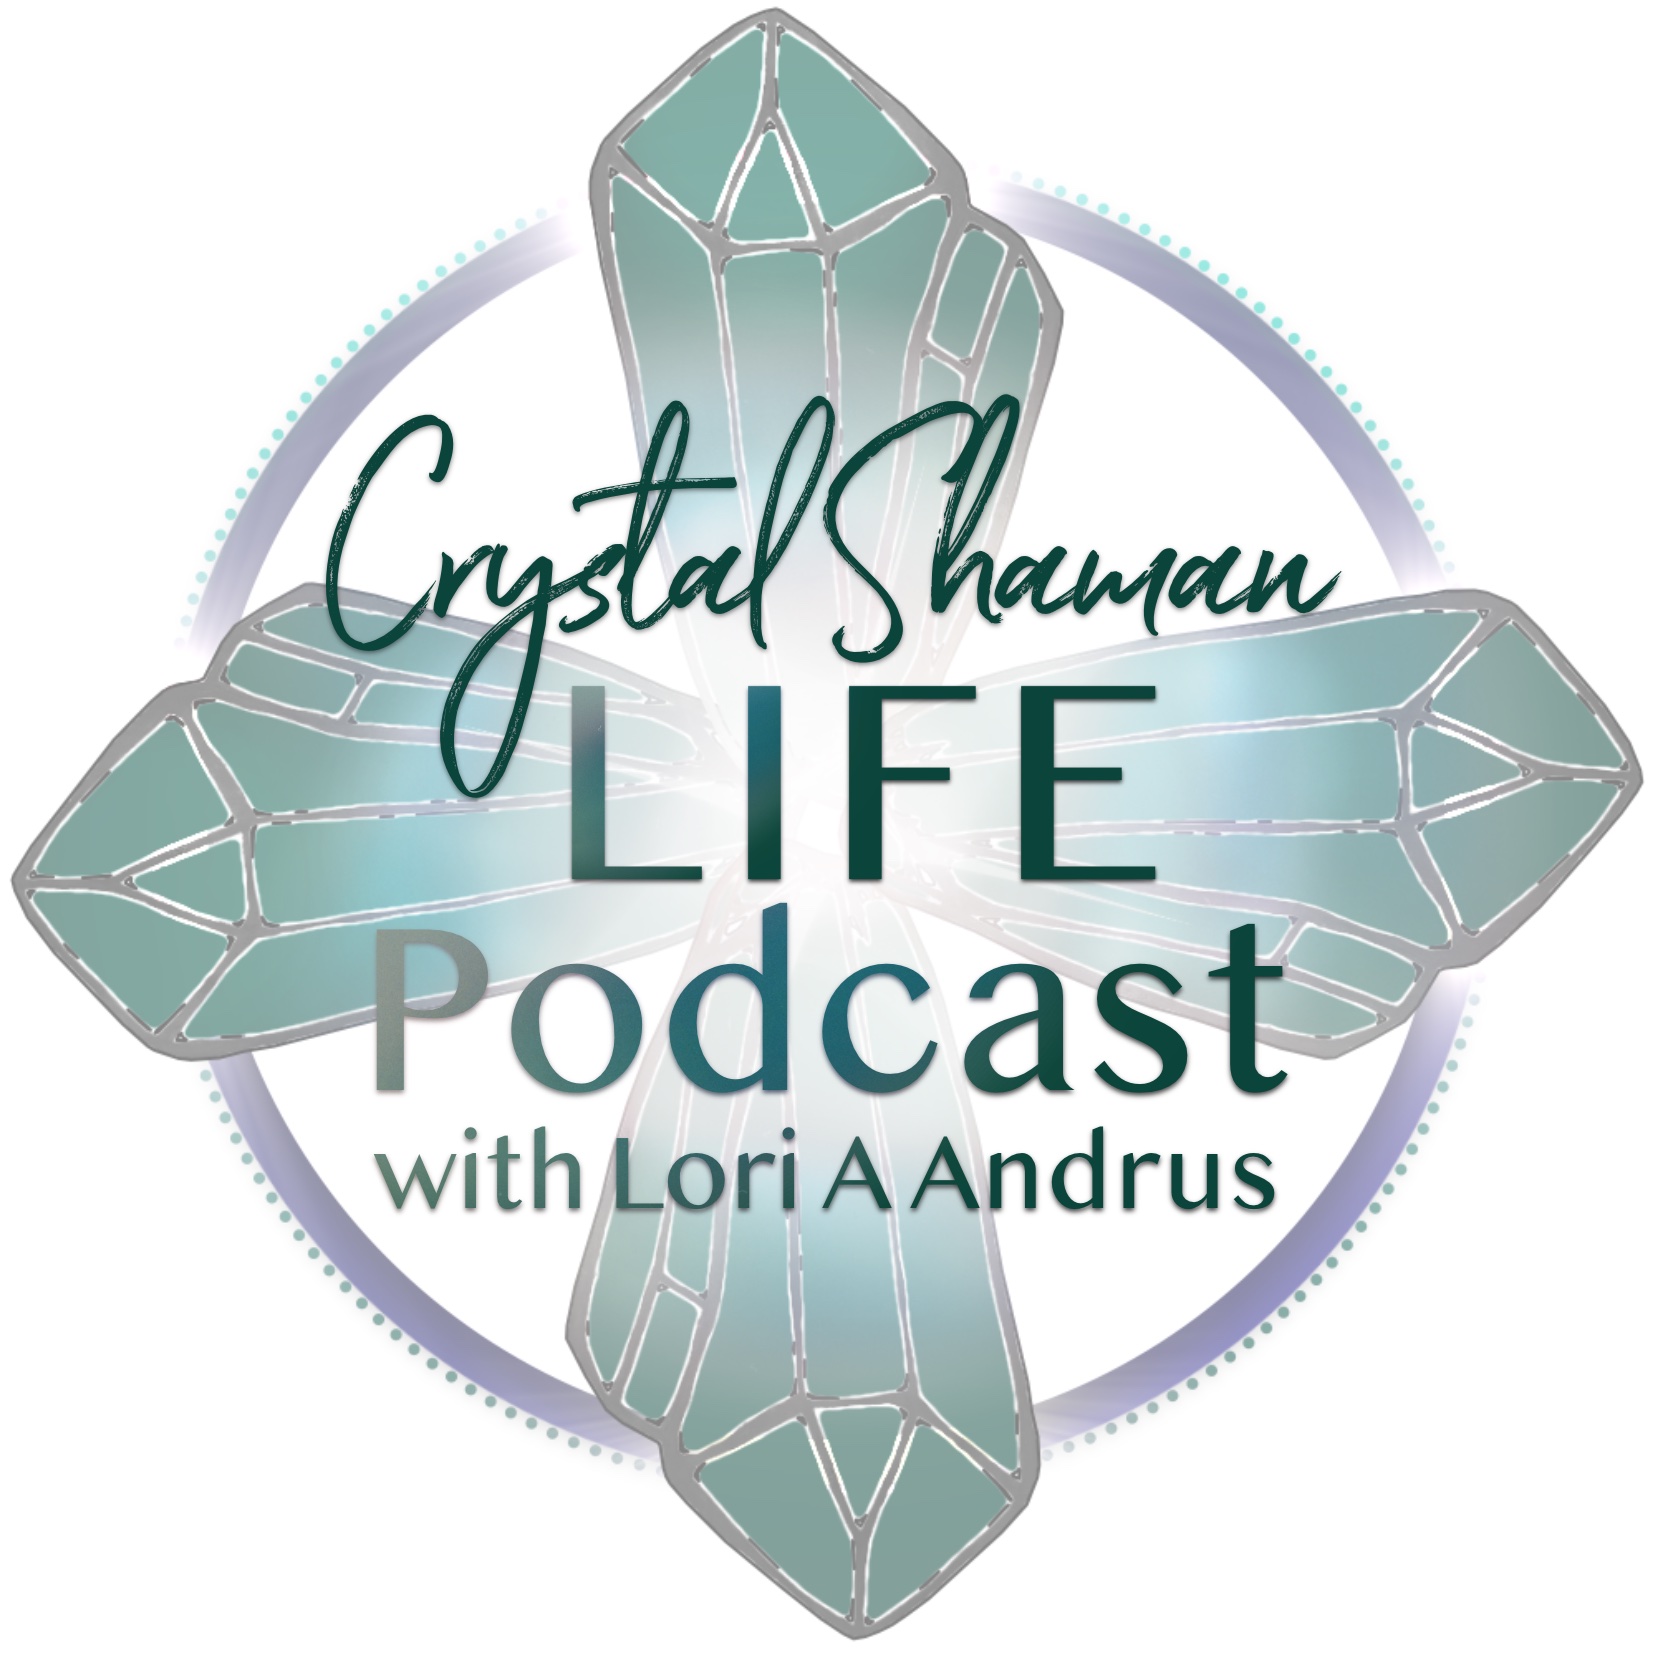 Crystal Shaman Life with Lori A Andrus